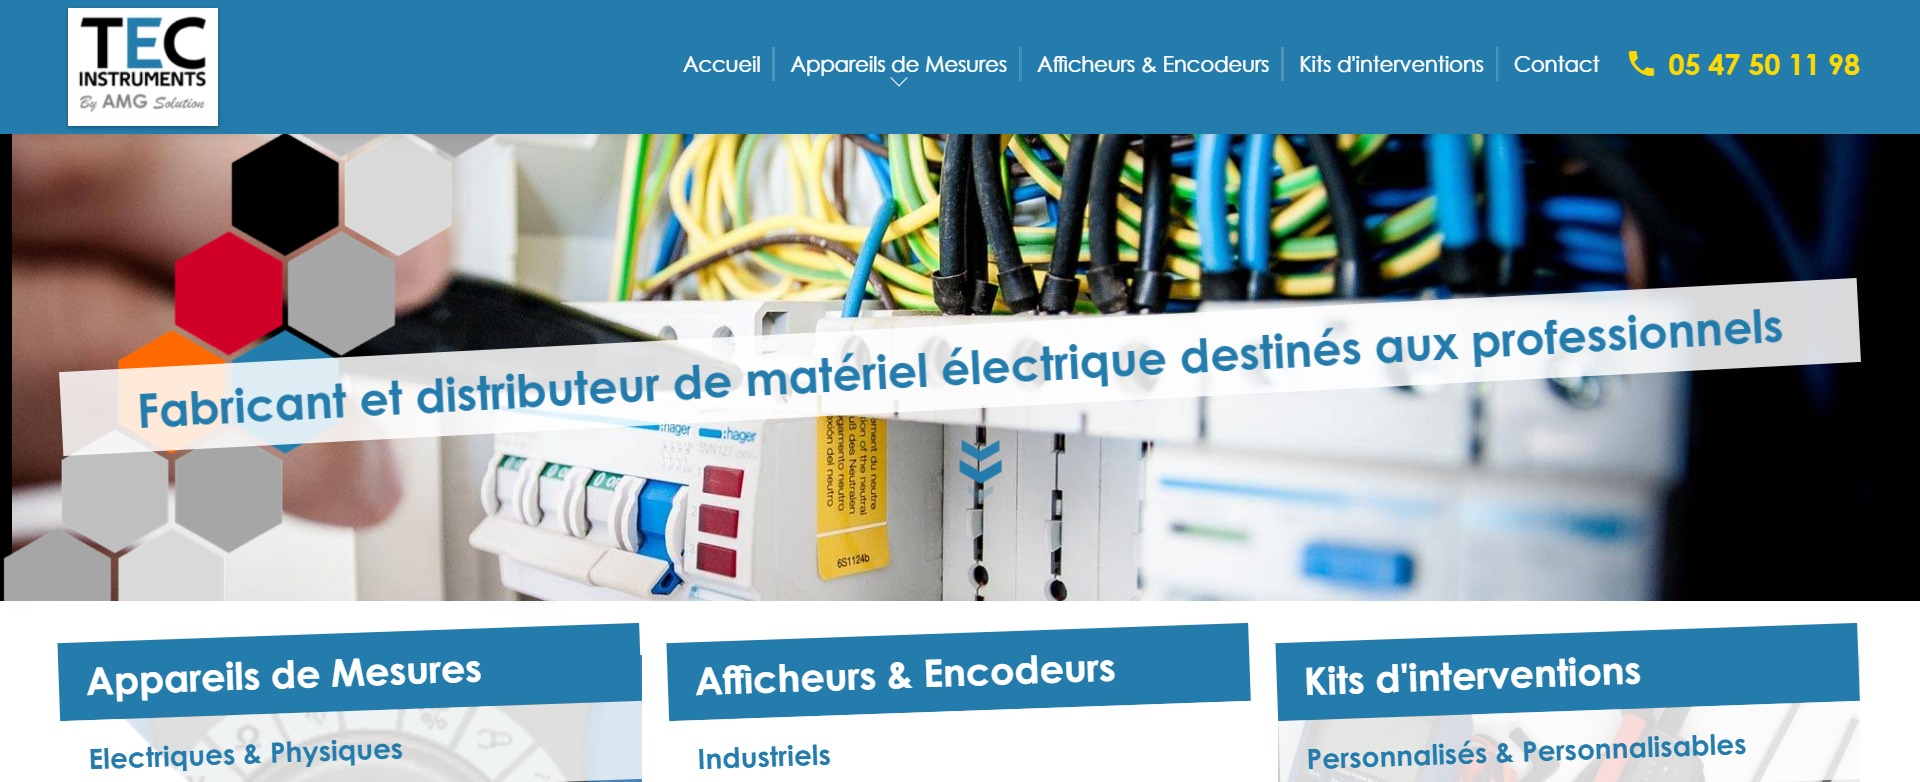 Vente d'appareil de mesure électrique à Bordeaux